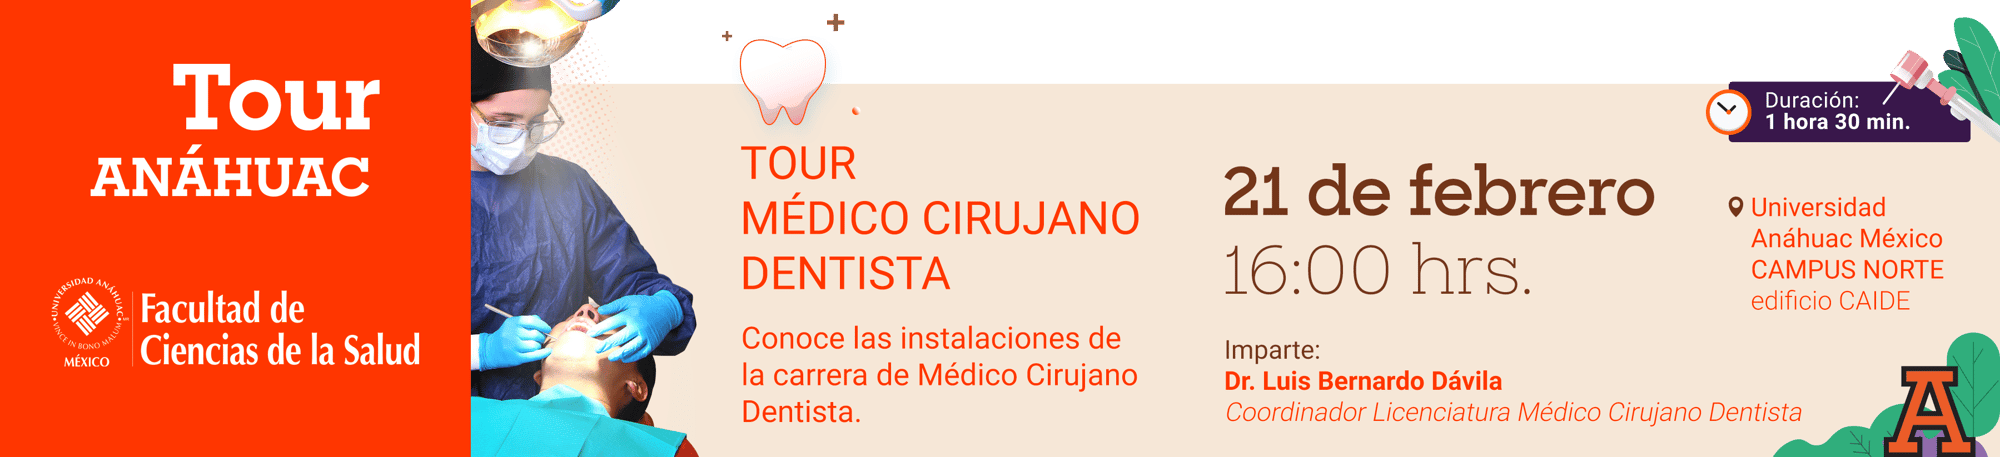 banner Tour Médico Cirujano Dentista